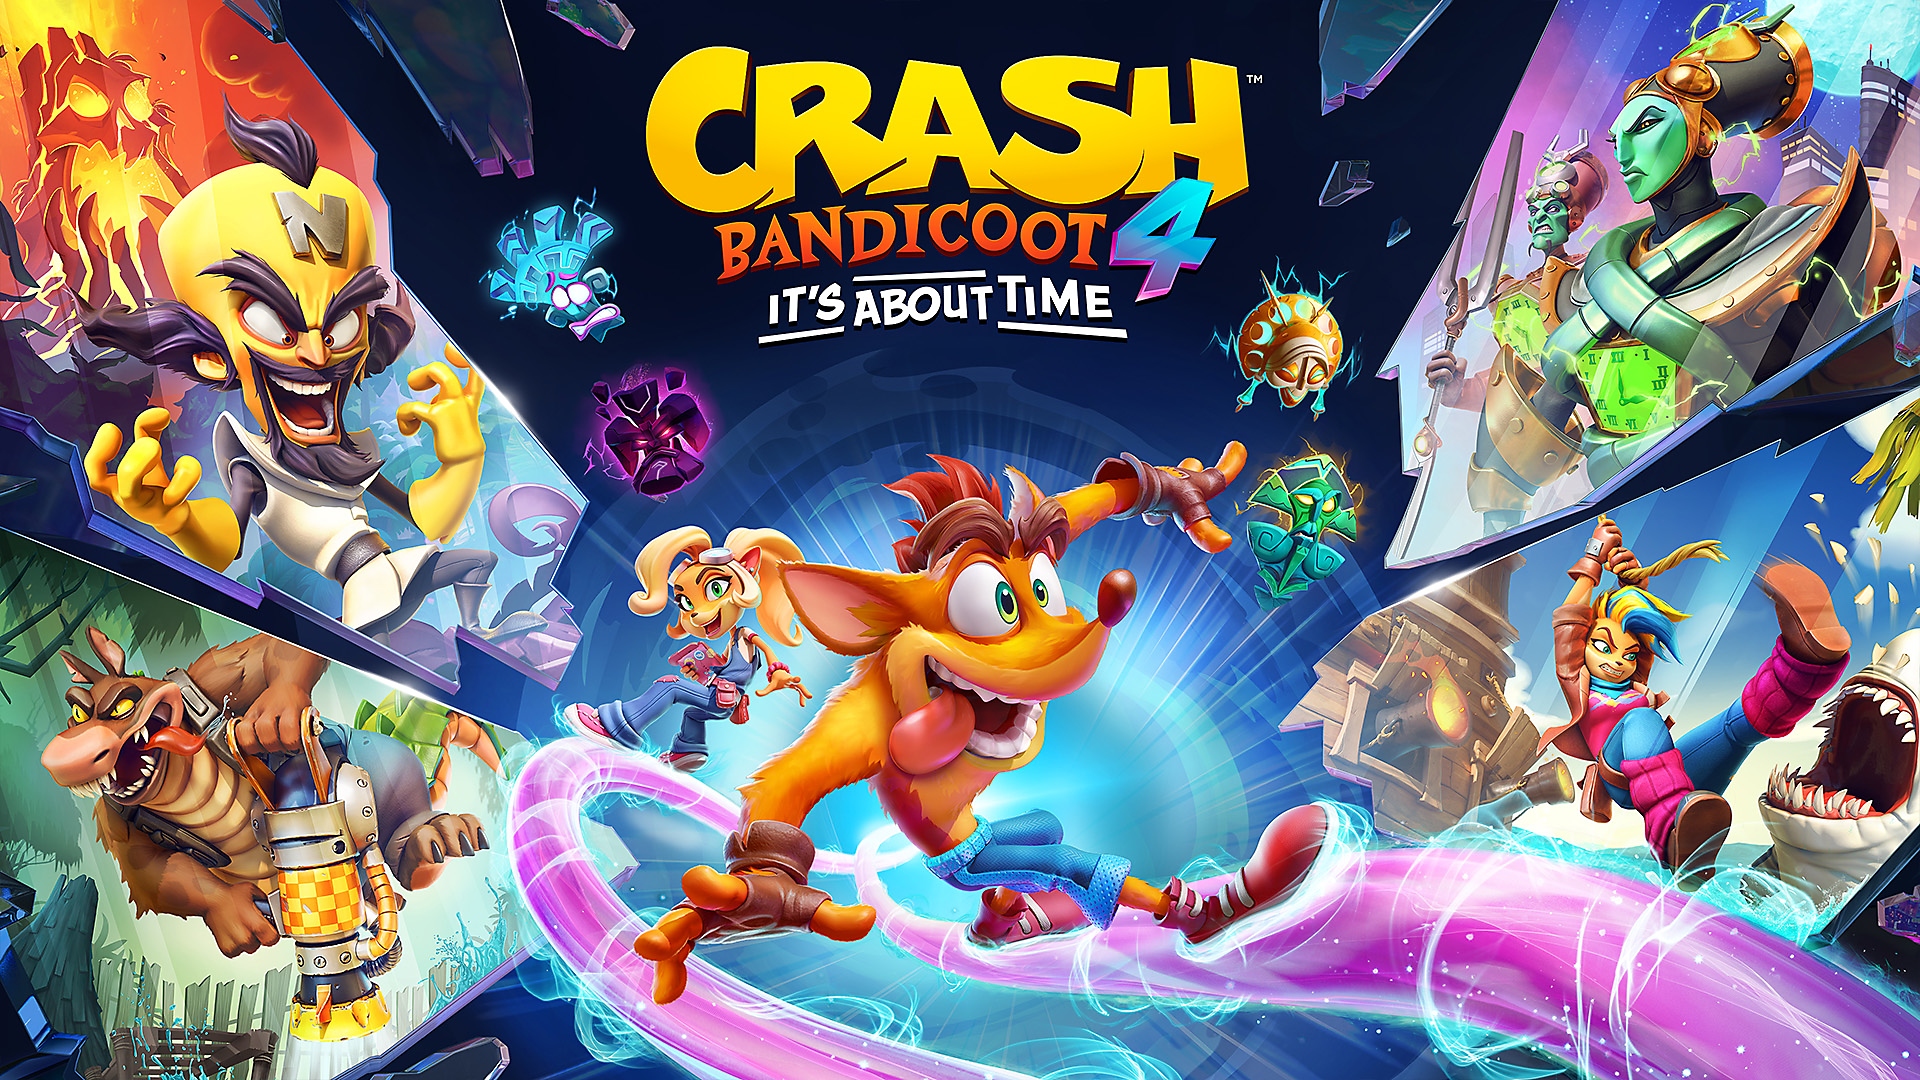 Crash Bandicoot 4: العرض التشويقي لإطلاق اللعبة